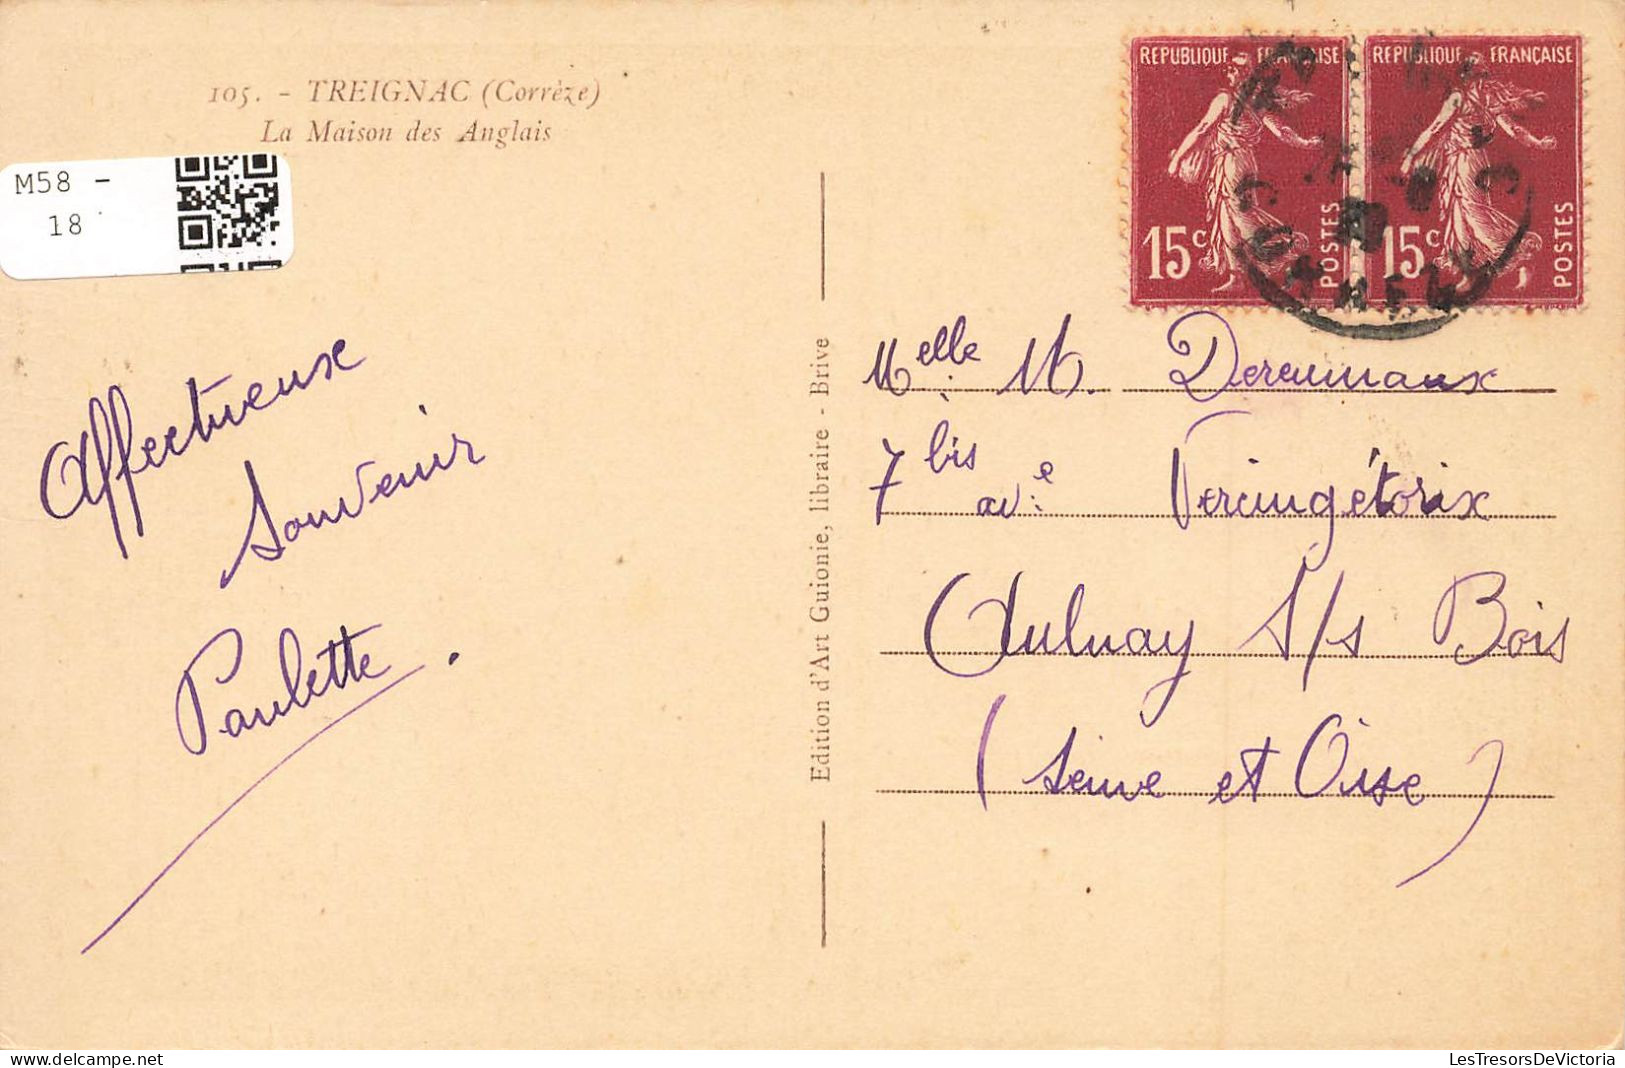 FRANCE - Treignac - La Maison Des Anglais - Chaumière - Maison De Campagne - Carte Postale Ancienne - Treignac